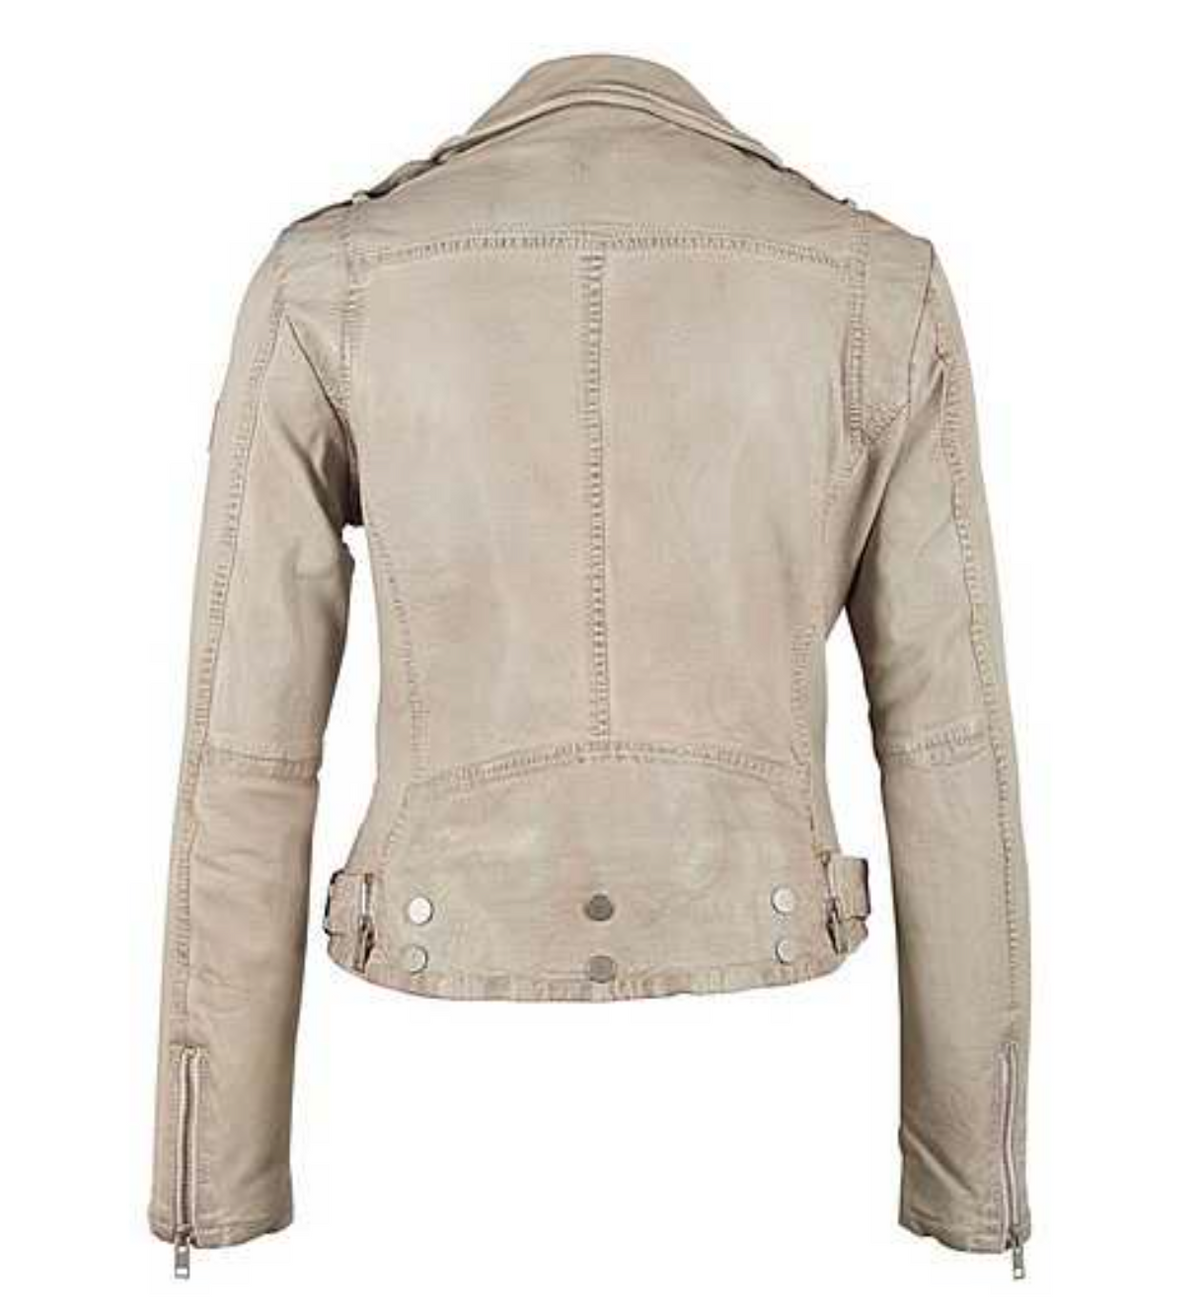 Wild Leather Jacket